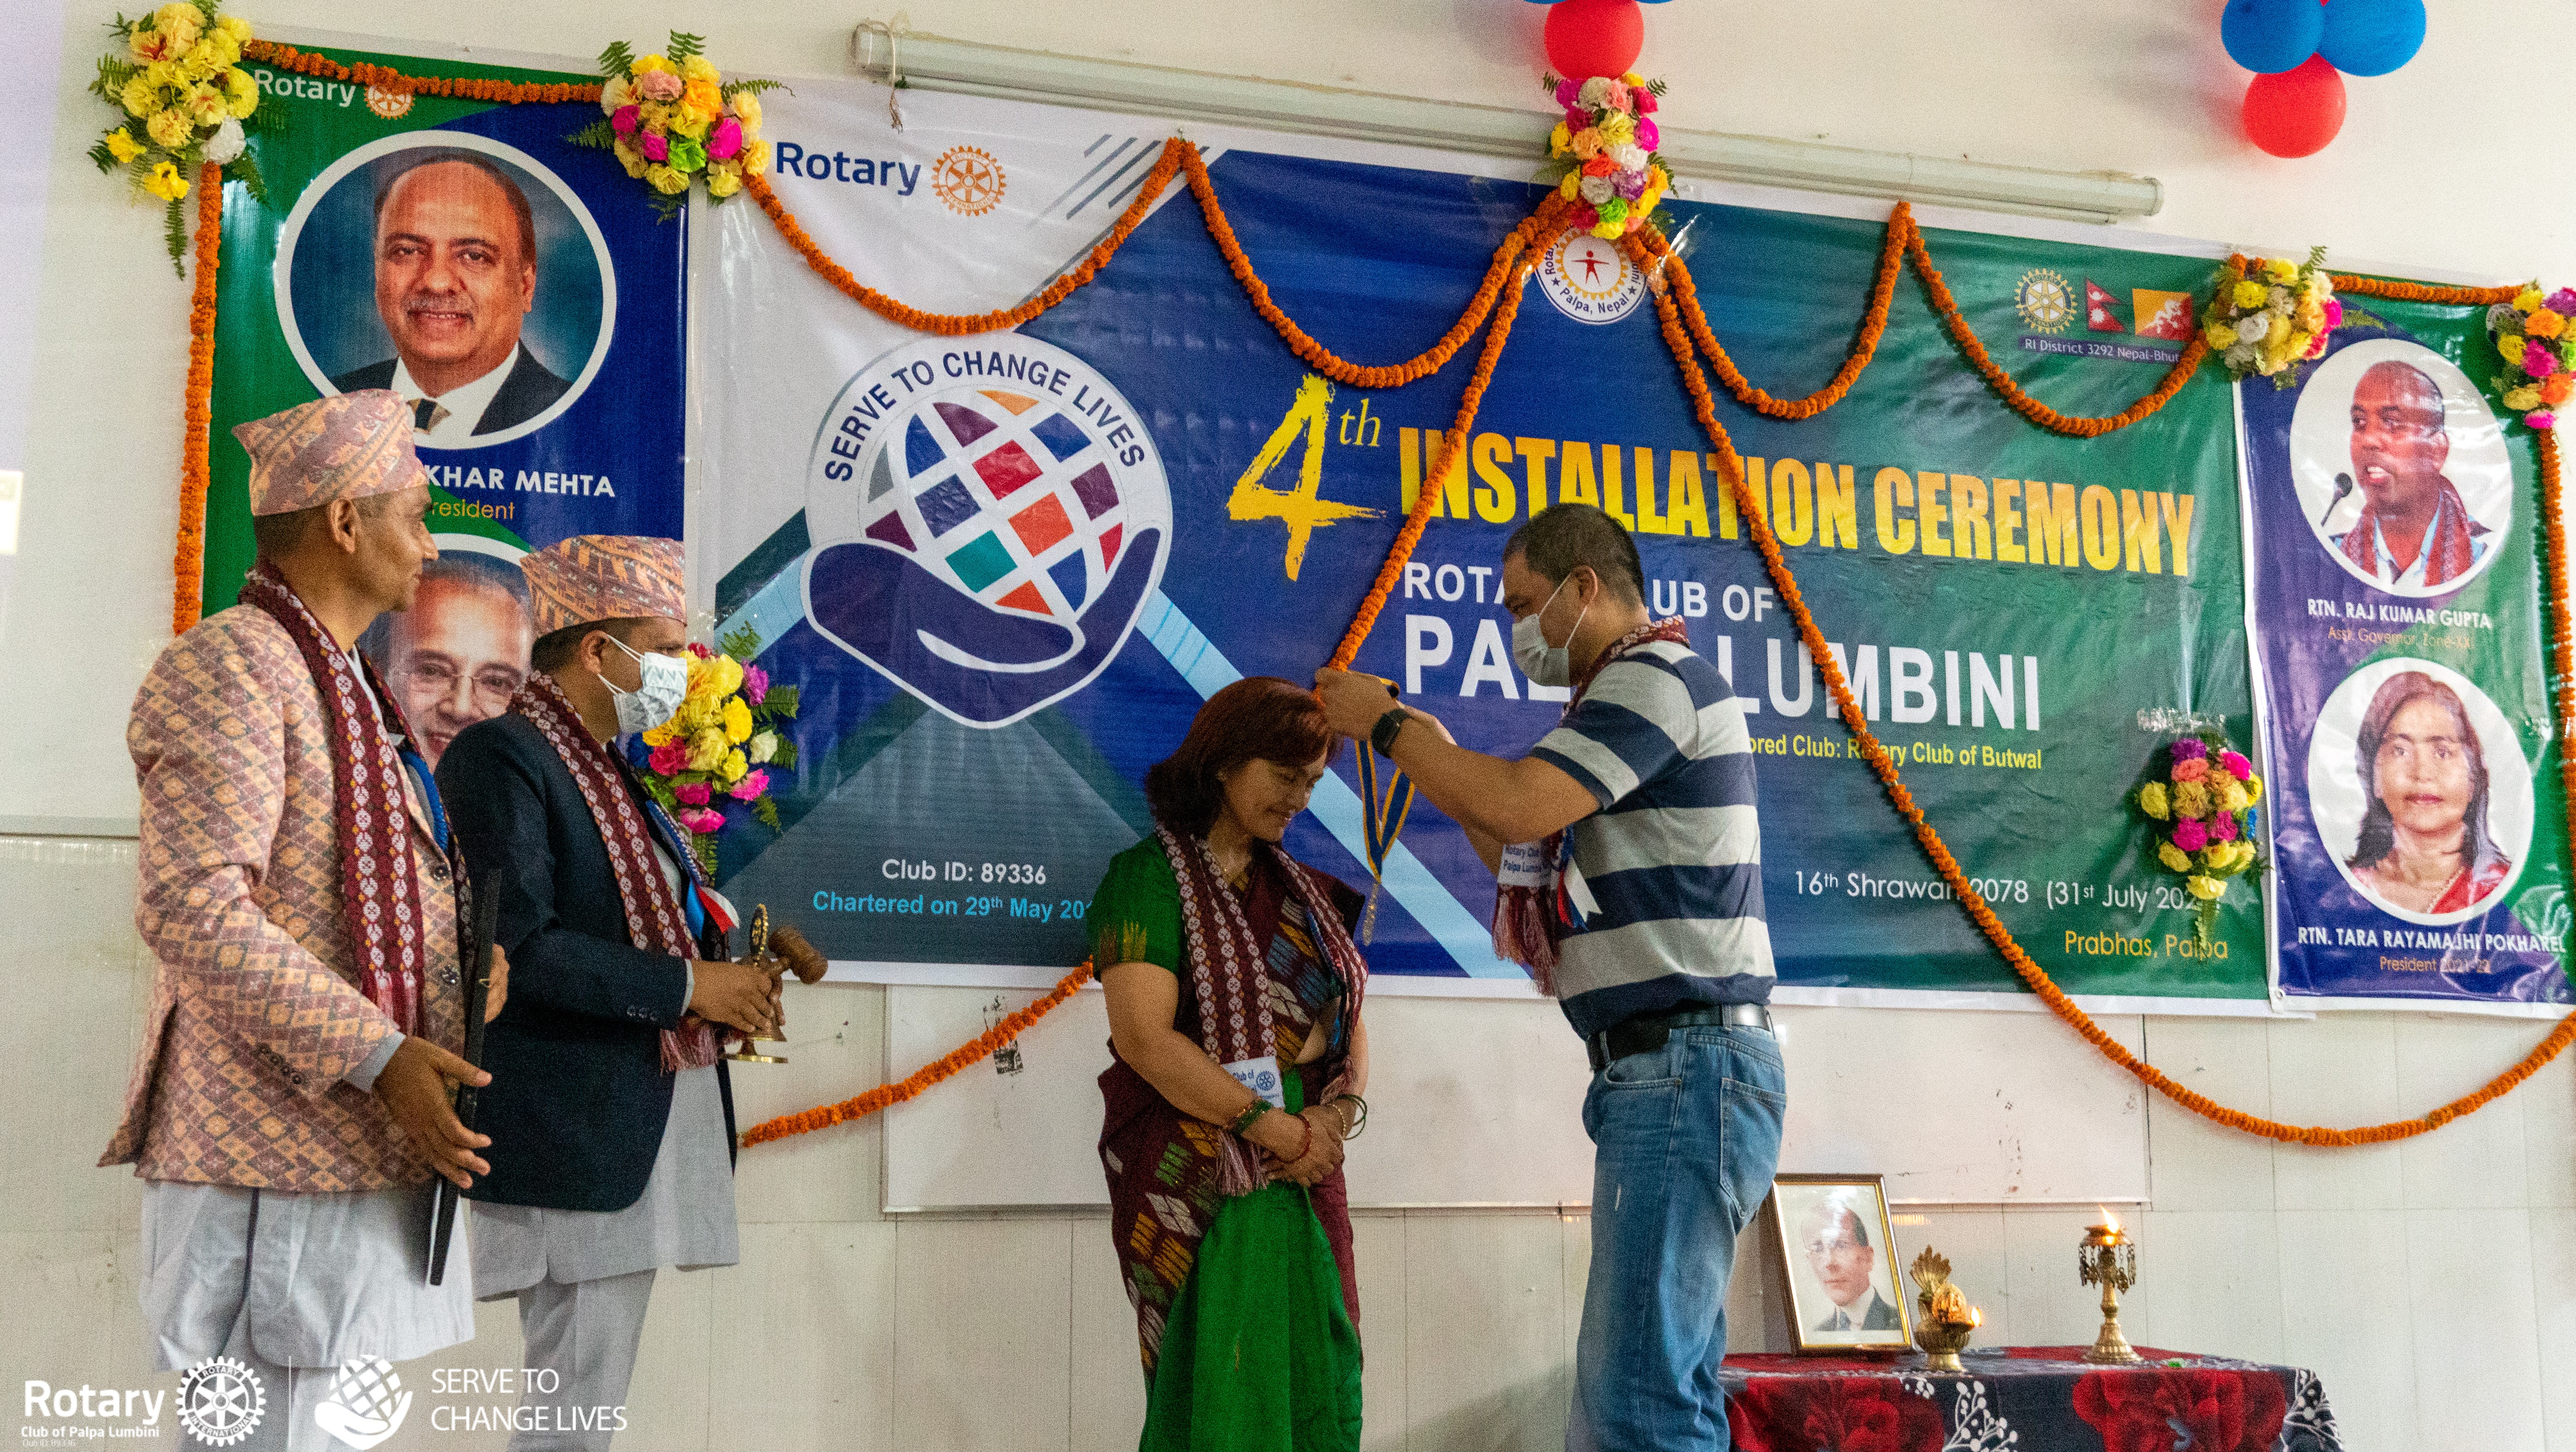 रोटरी क्लव अफ पाल्पा लुम्बिनीको चौथो पदास्थापन सम्पन्न